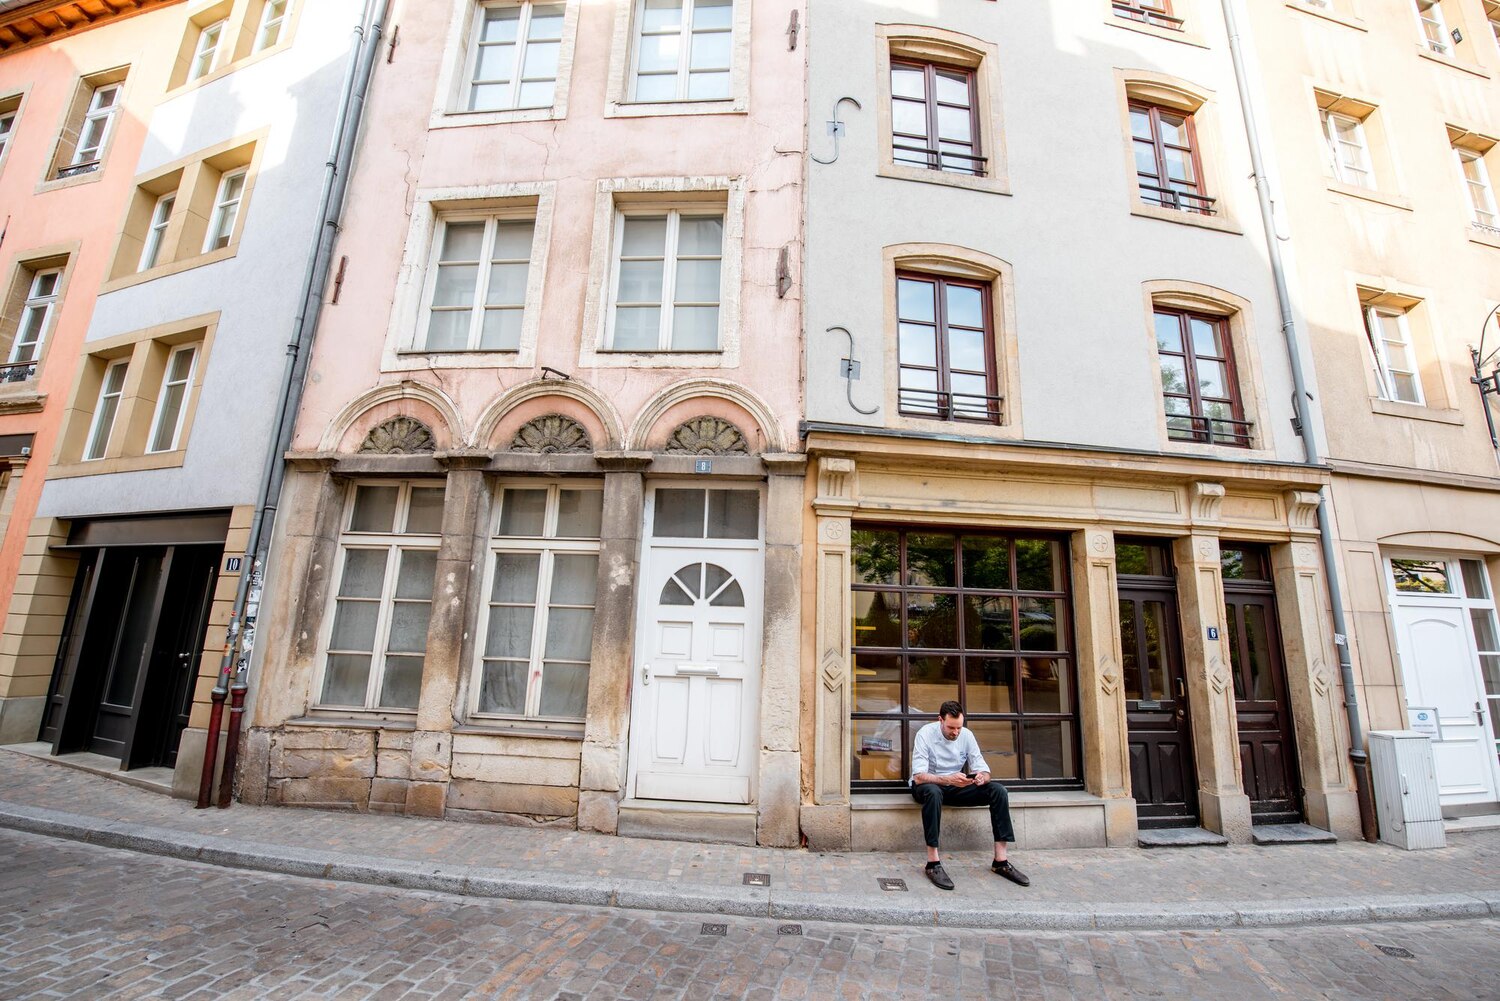 Découvrez comment sélectionner l'agence immobilière de premier choix dans le 15ème arrondissement de Paris